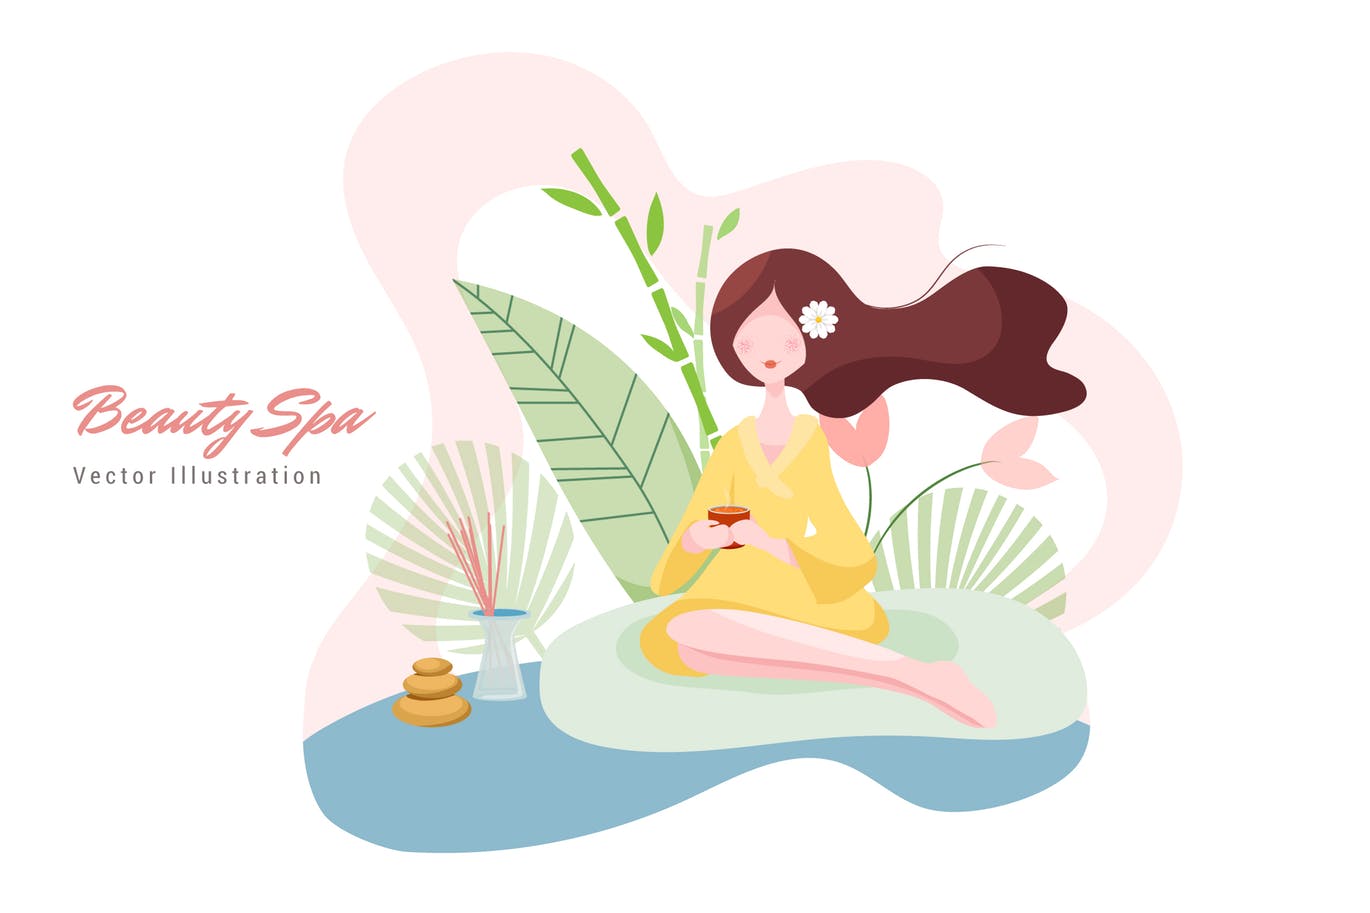 美容SPA主题矢量插画大洋岛精选素材v1 Beauty Spa Vector Illustration插图